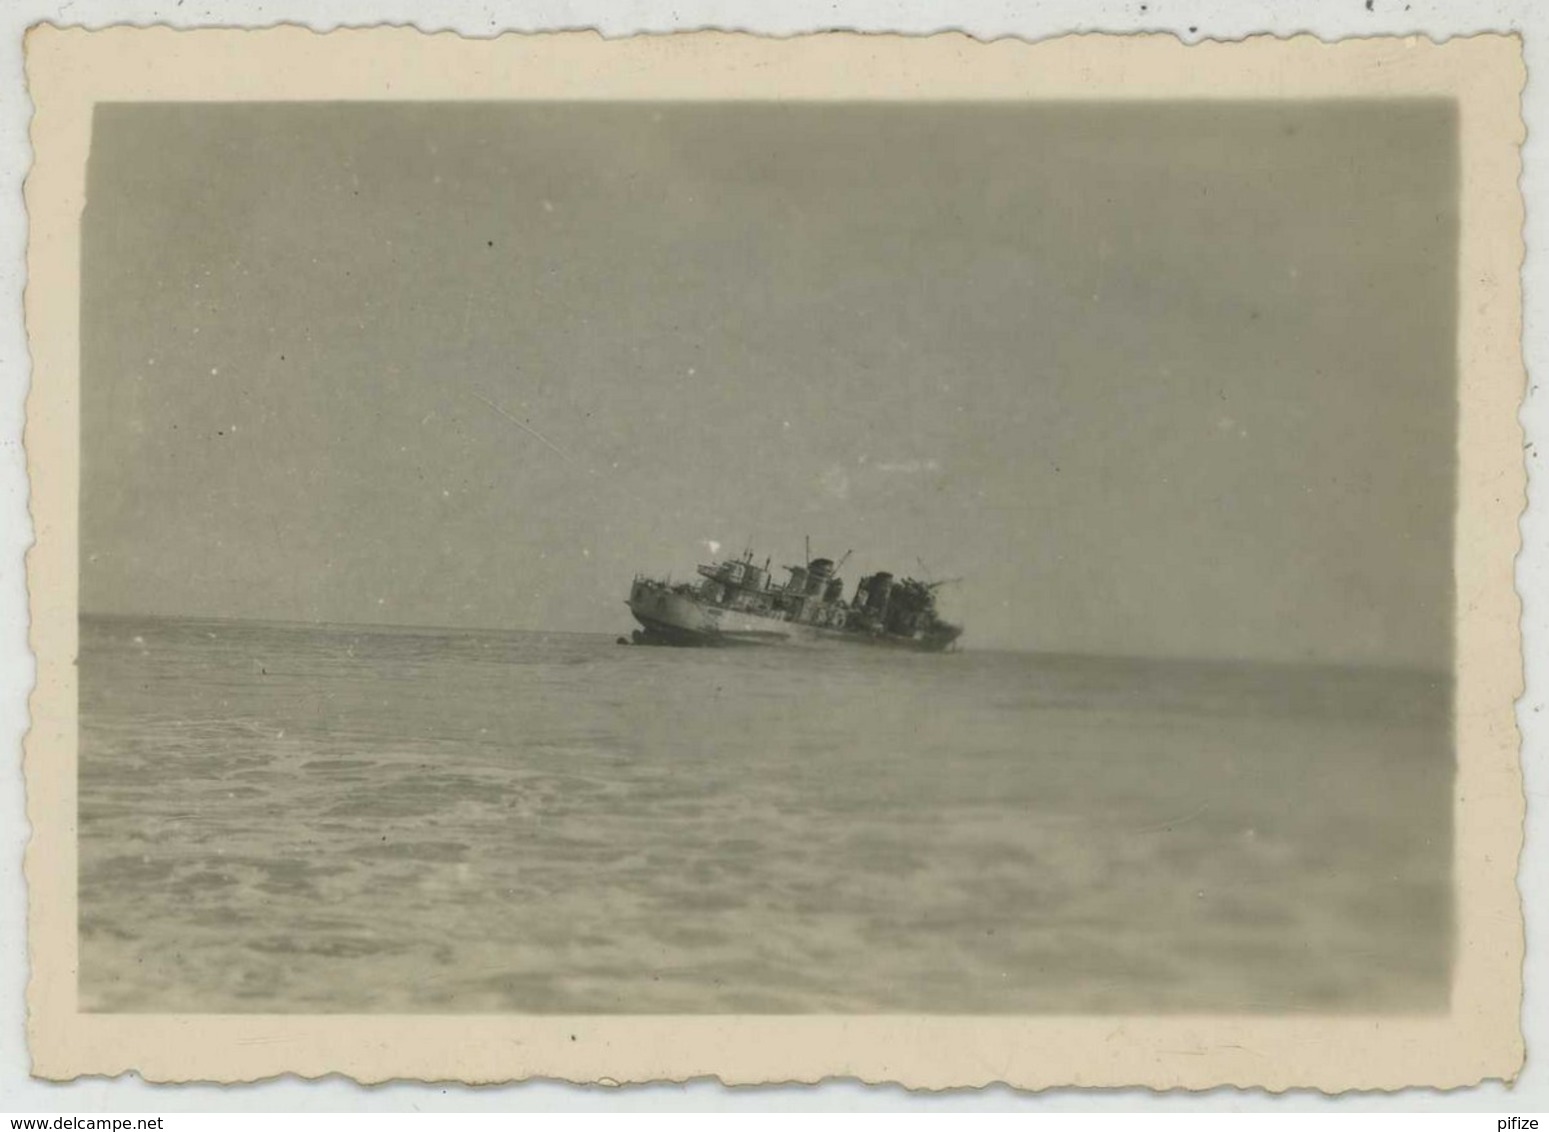 (Bateaux) Guerre de 1939-45 . 7 photos du contre-torpilleur l'"Audacieux" coulé par les Anglais et échoué à Dakar . 1940